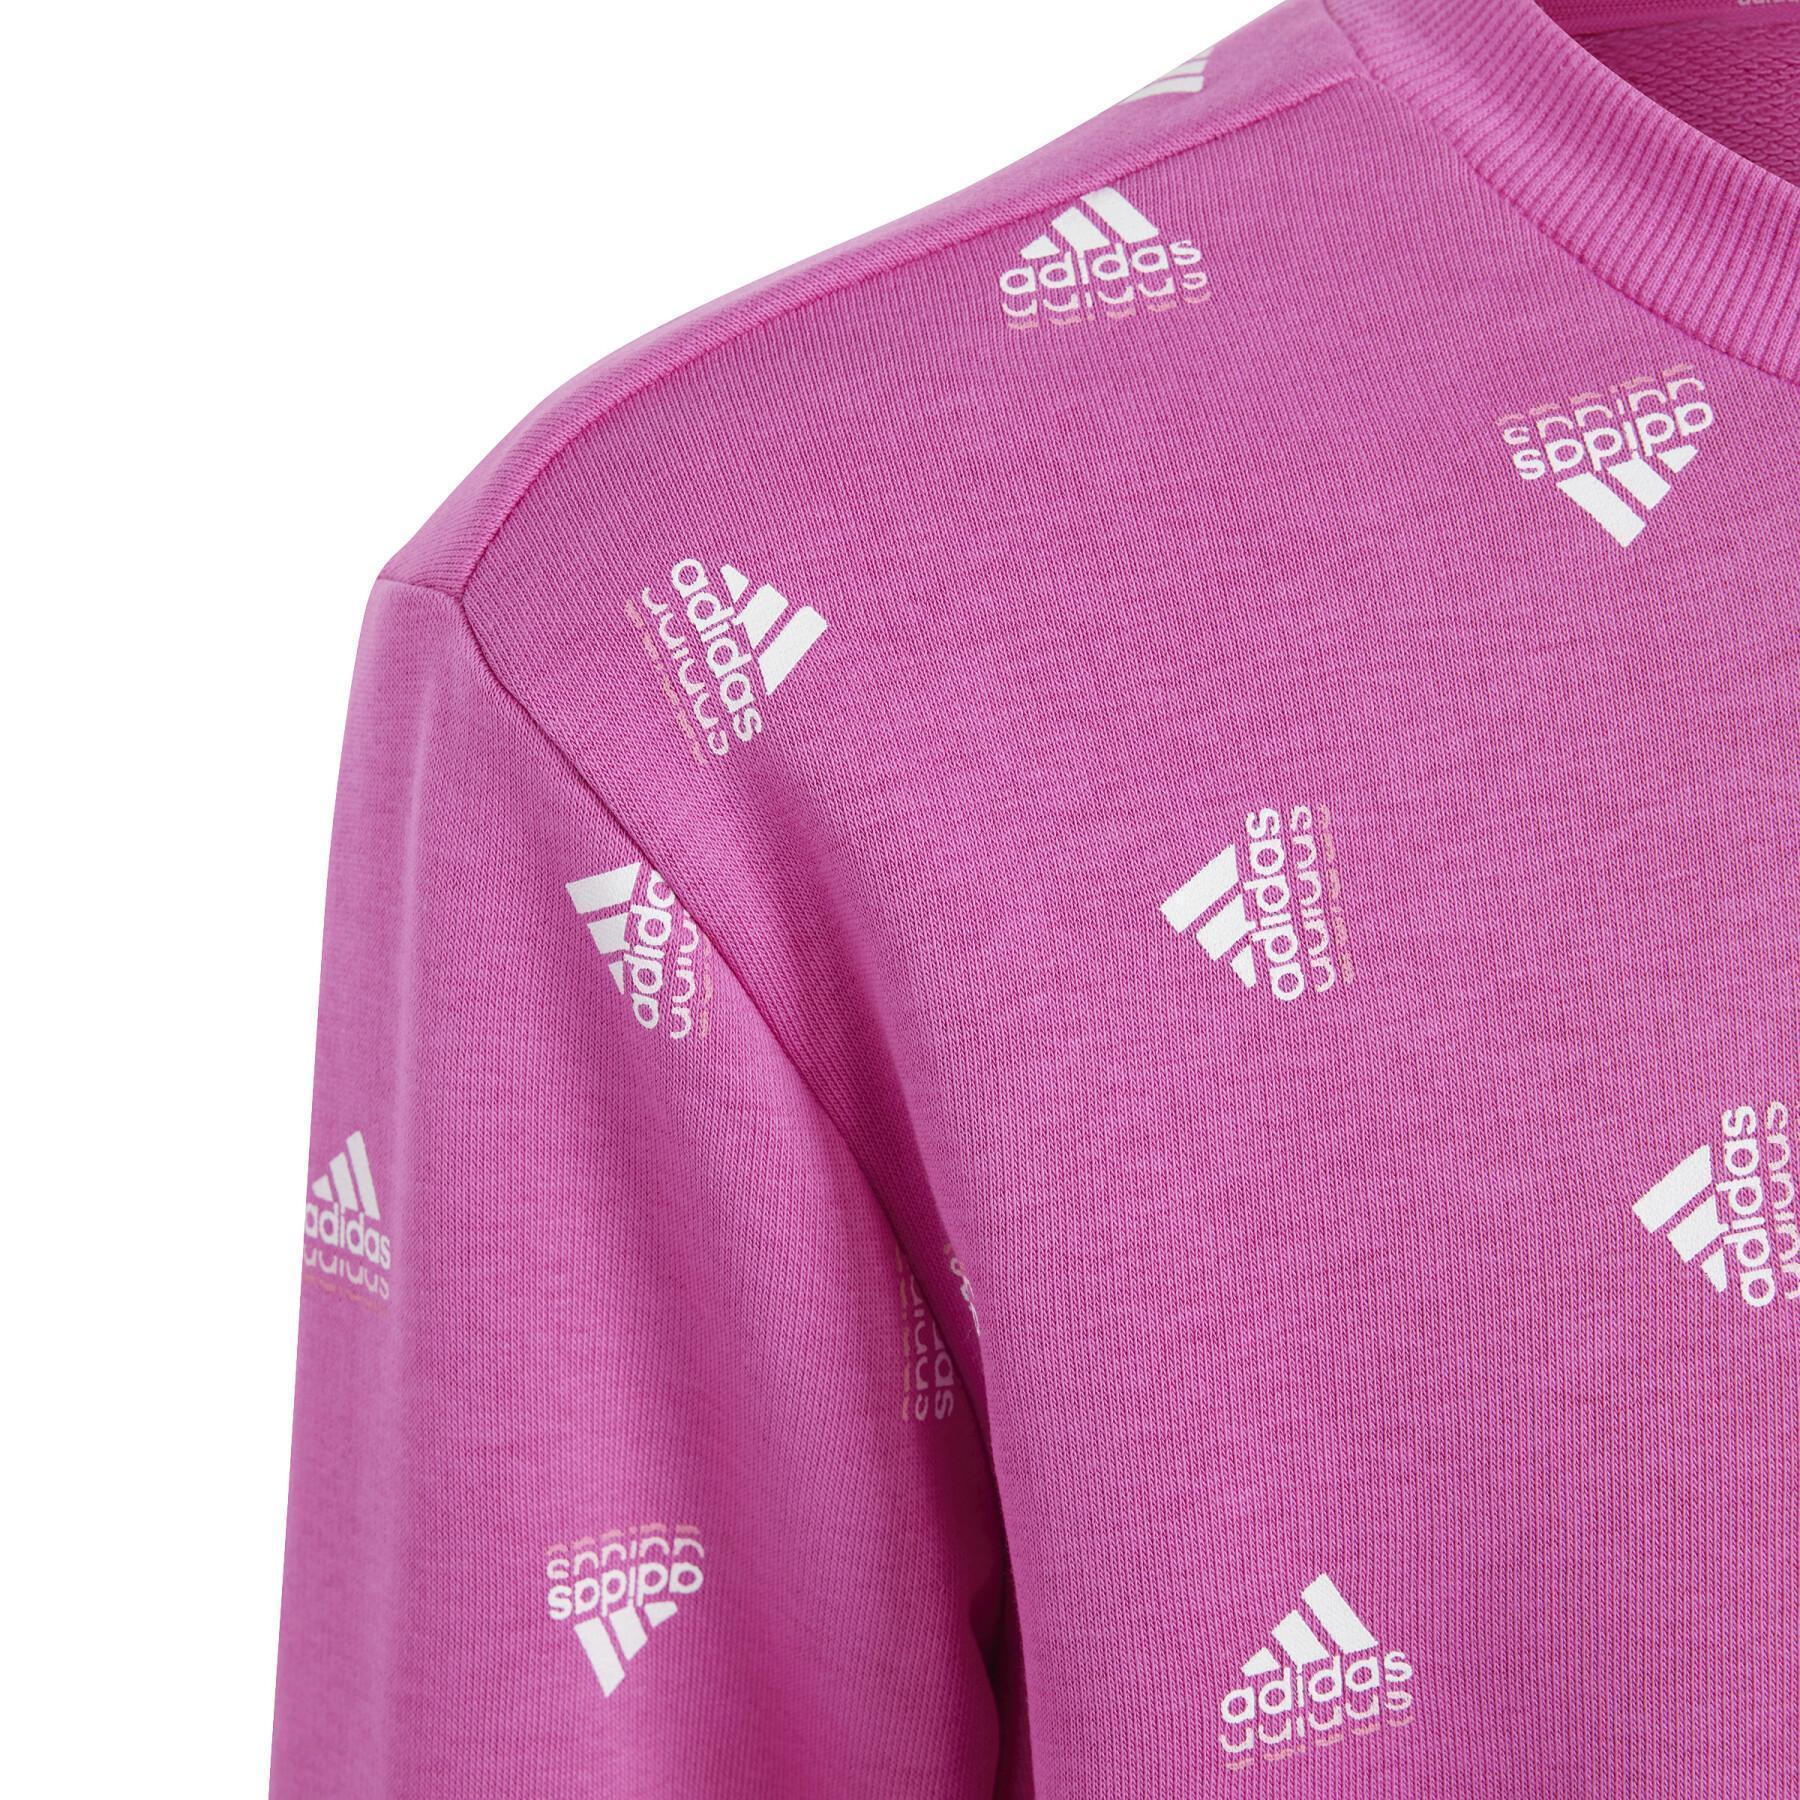 Sweatshirt aus Baumwolle mit Aufdruck, Mädchen adidas Brand Love